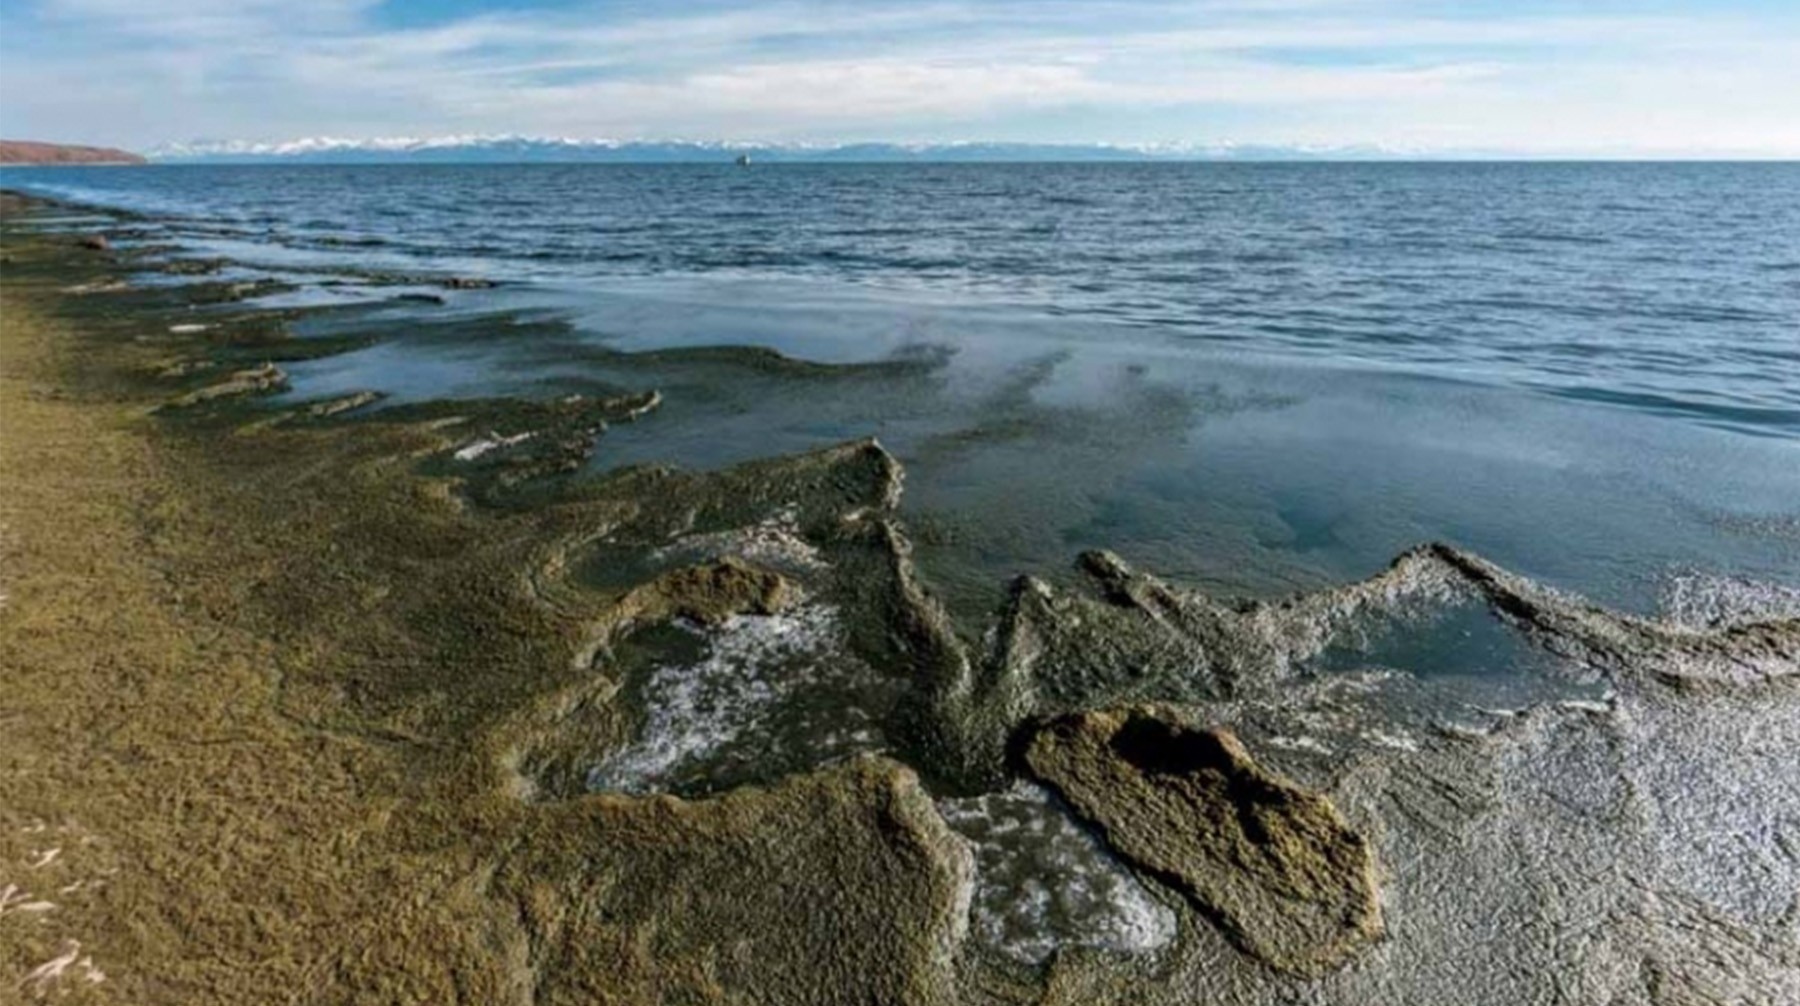 Dailystorm - Зеленые воды Байкала: глобальное потепление, сточные воды и ЦБК сделали озеро токсичным